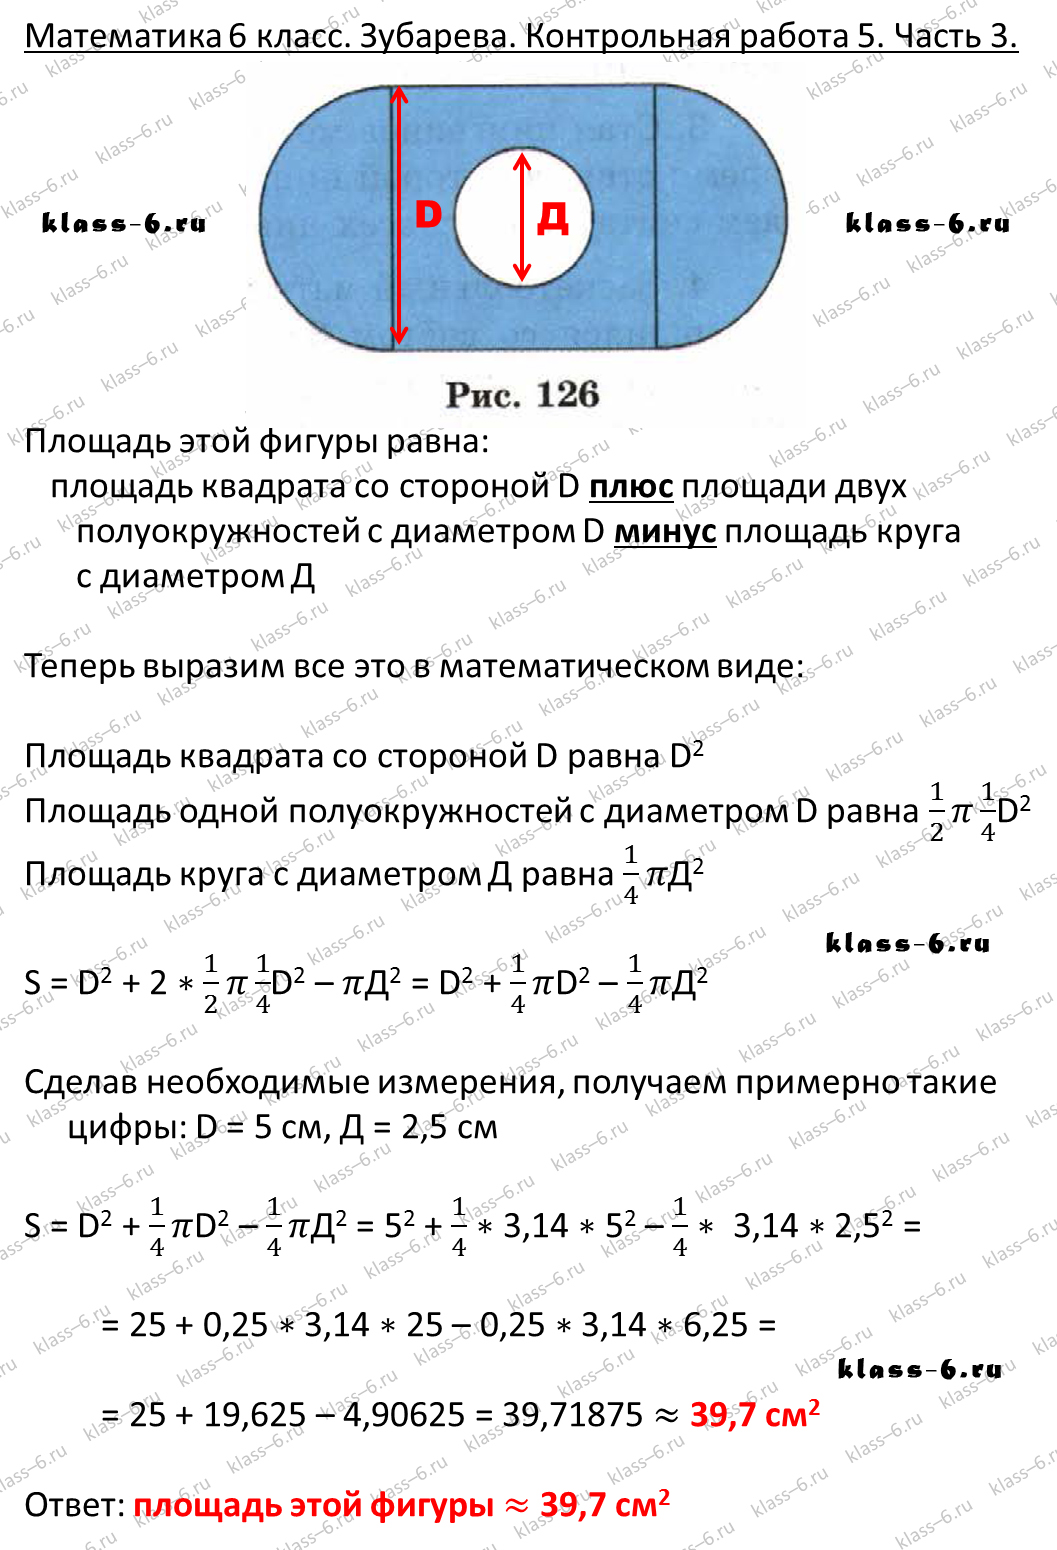 гдз математика Зубарева 6 класс ответ и подробное решение с объяснениями контрольной работы № 5 (3)